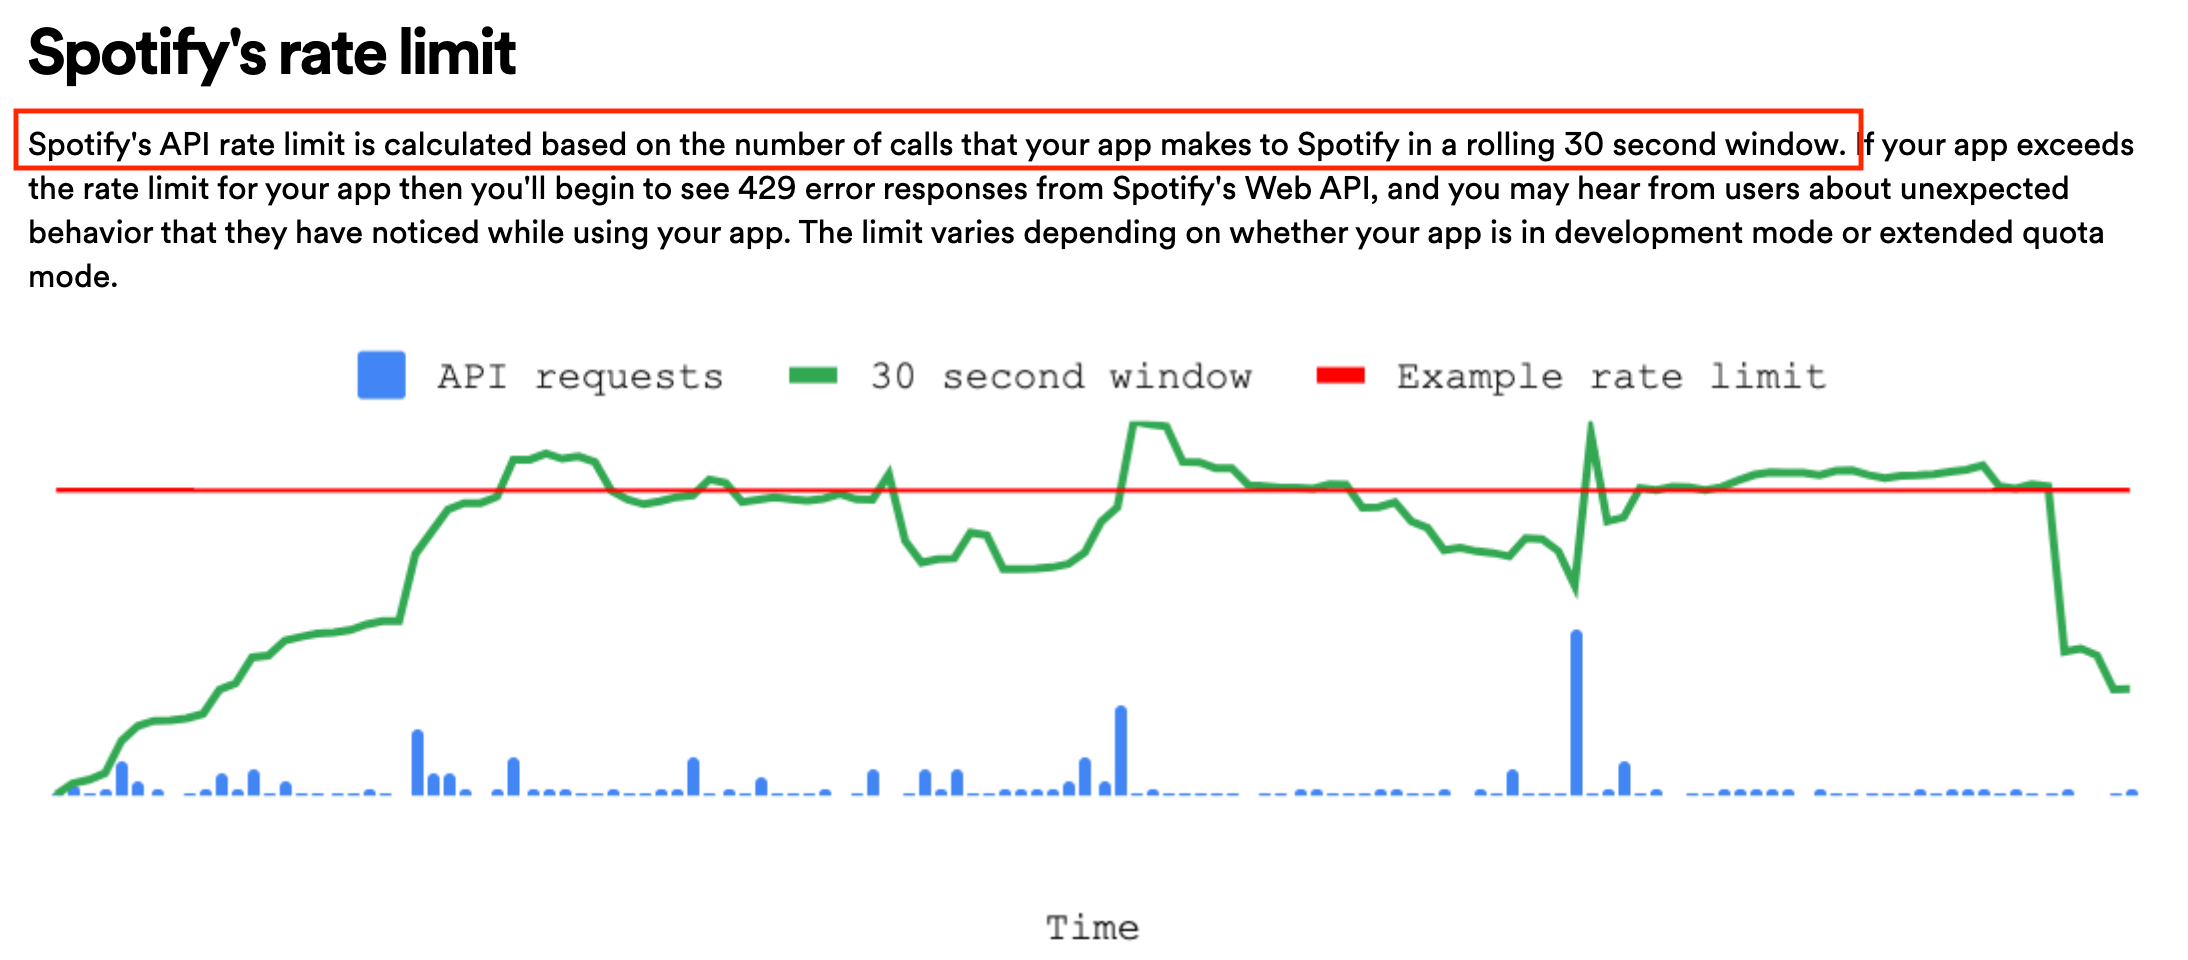 스포티파이 역시 30초간의 호출 수를 기반으로 API 요청을 조절